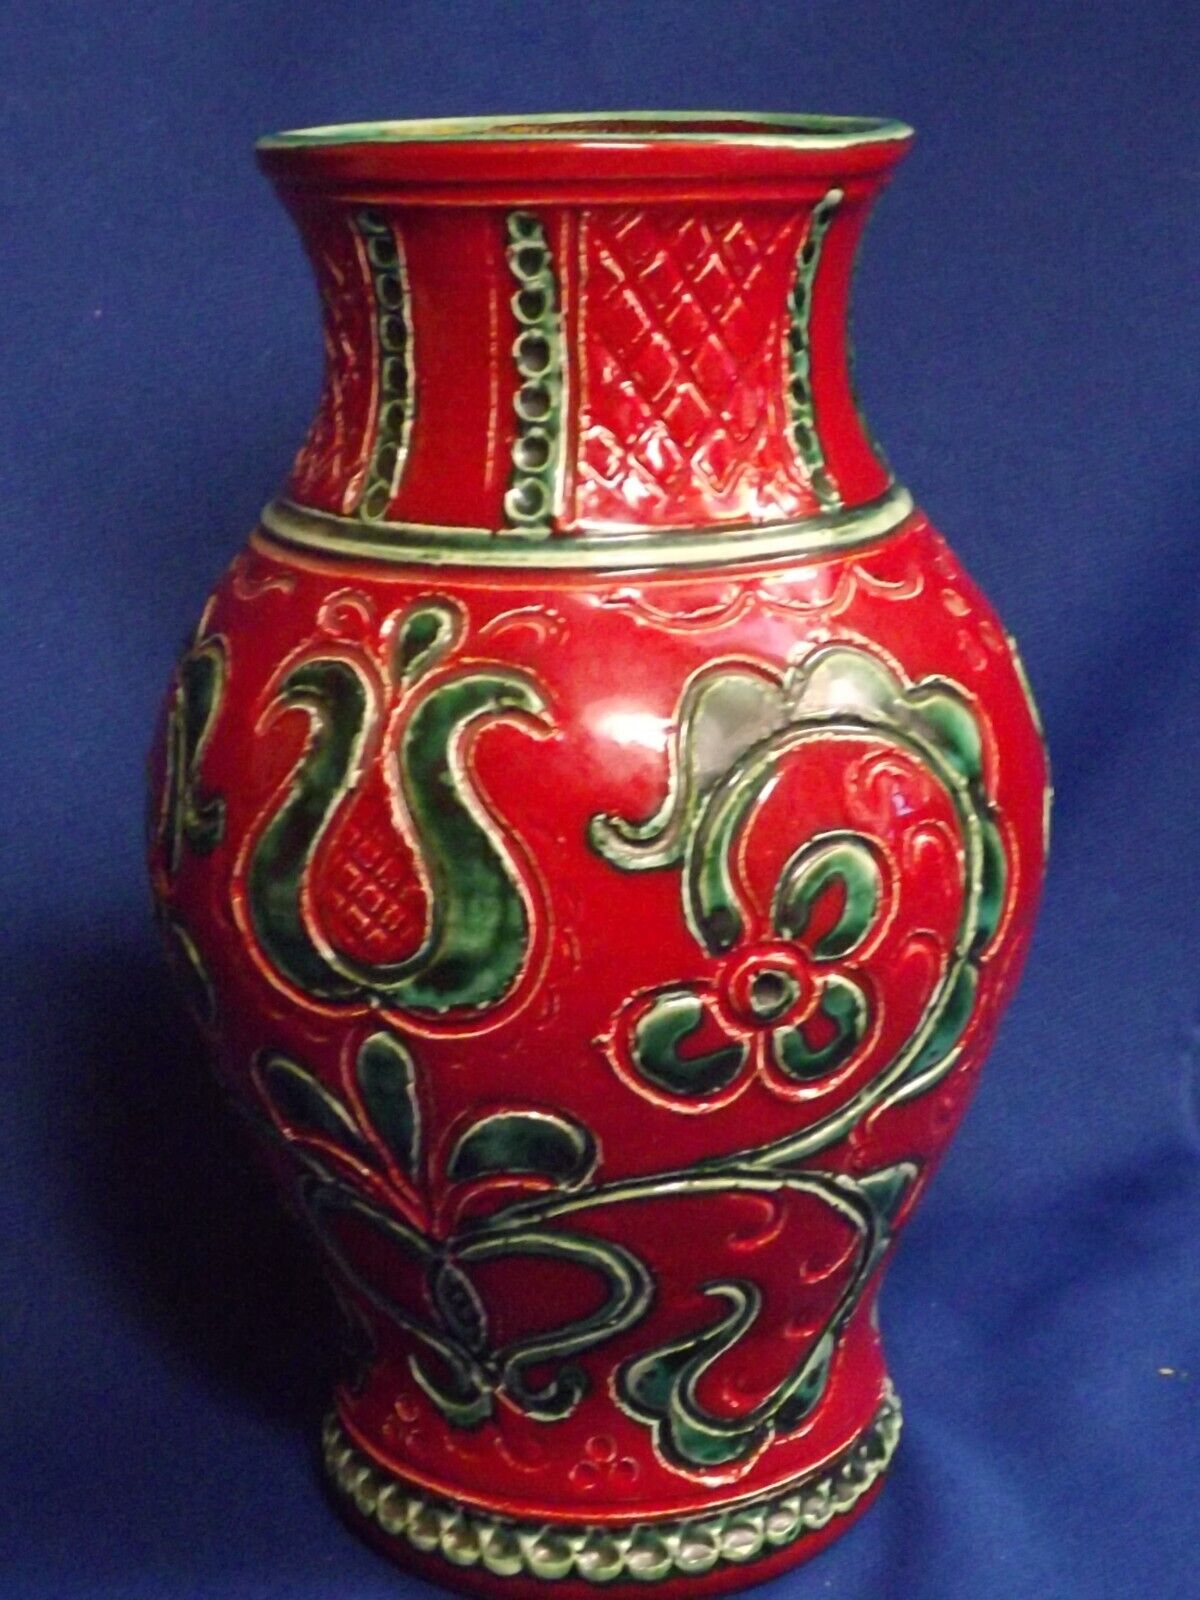 Vintage Austrian Gmundner Keramik Incised Green Floral on RARE Red Body 7” Vase 